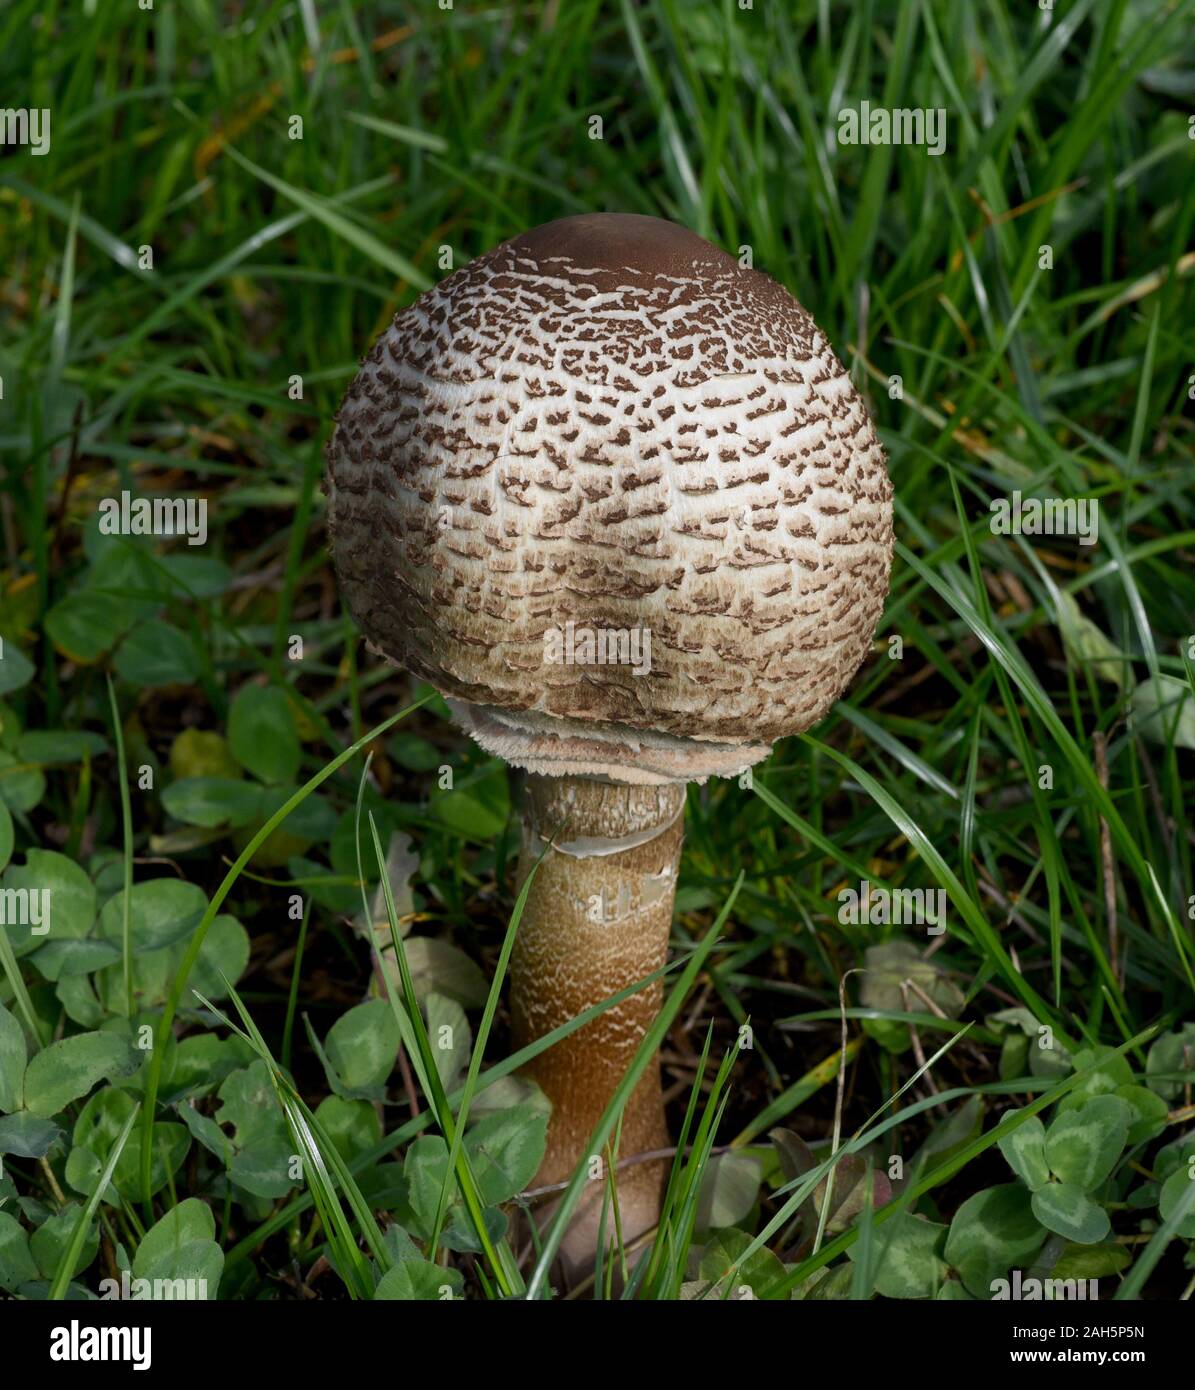 Parasolpilz, Macrolepiota procera, auch Schirmpilz genannt, ist ein guter Speisepilz der auf Wiesen und im Wald waechst. Parasol mushroom, Macrolepiot Stock Photo